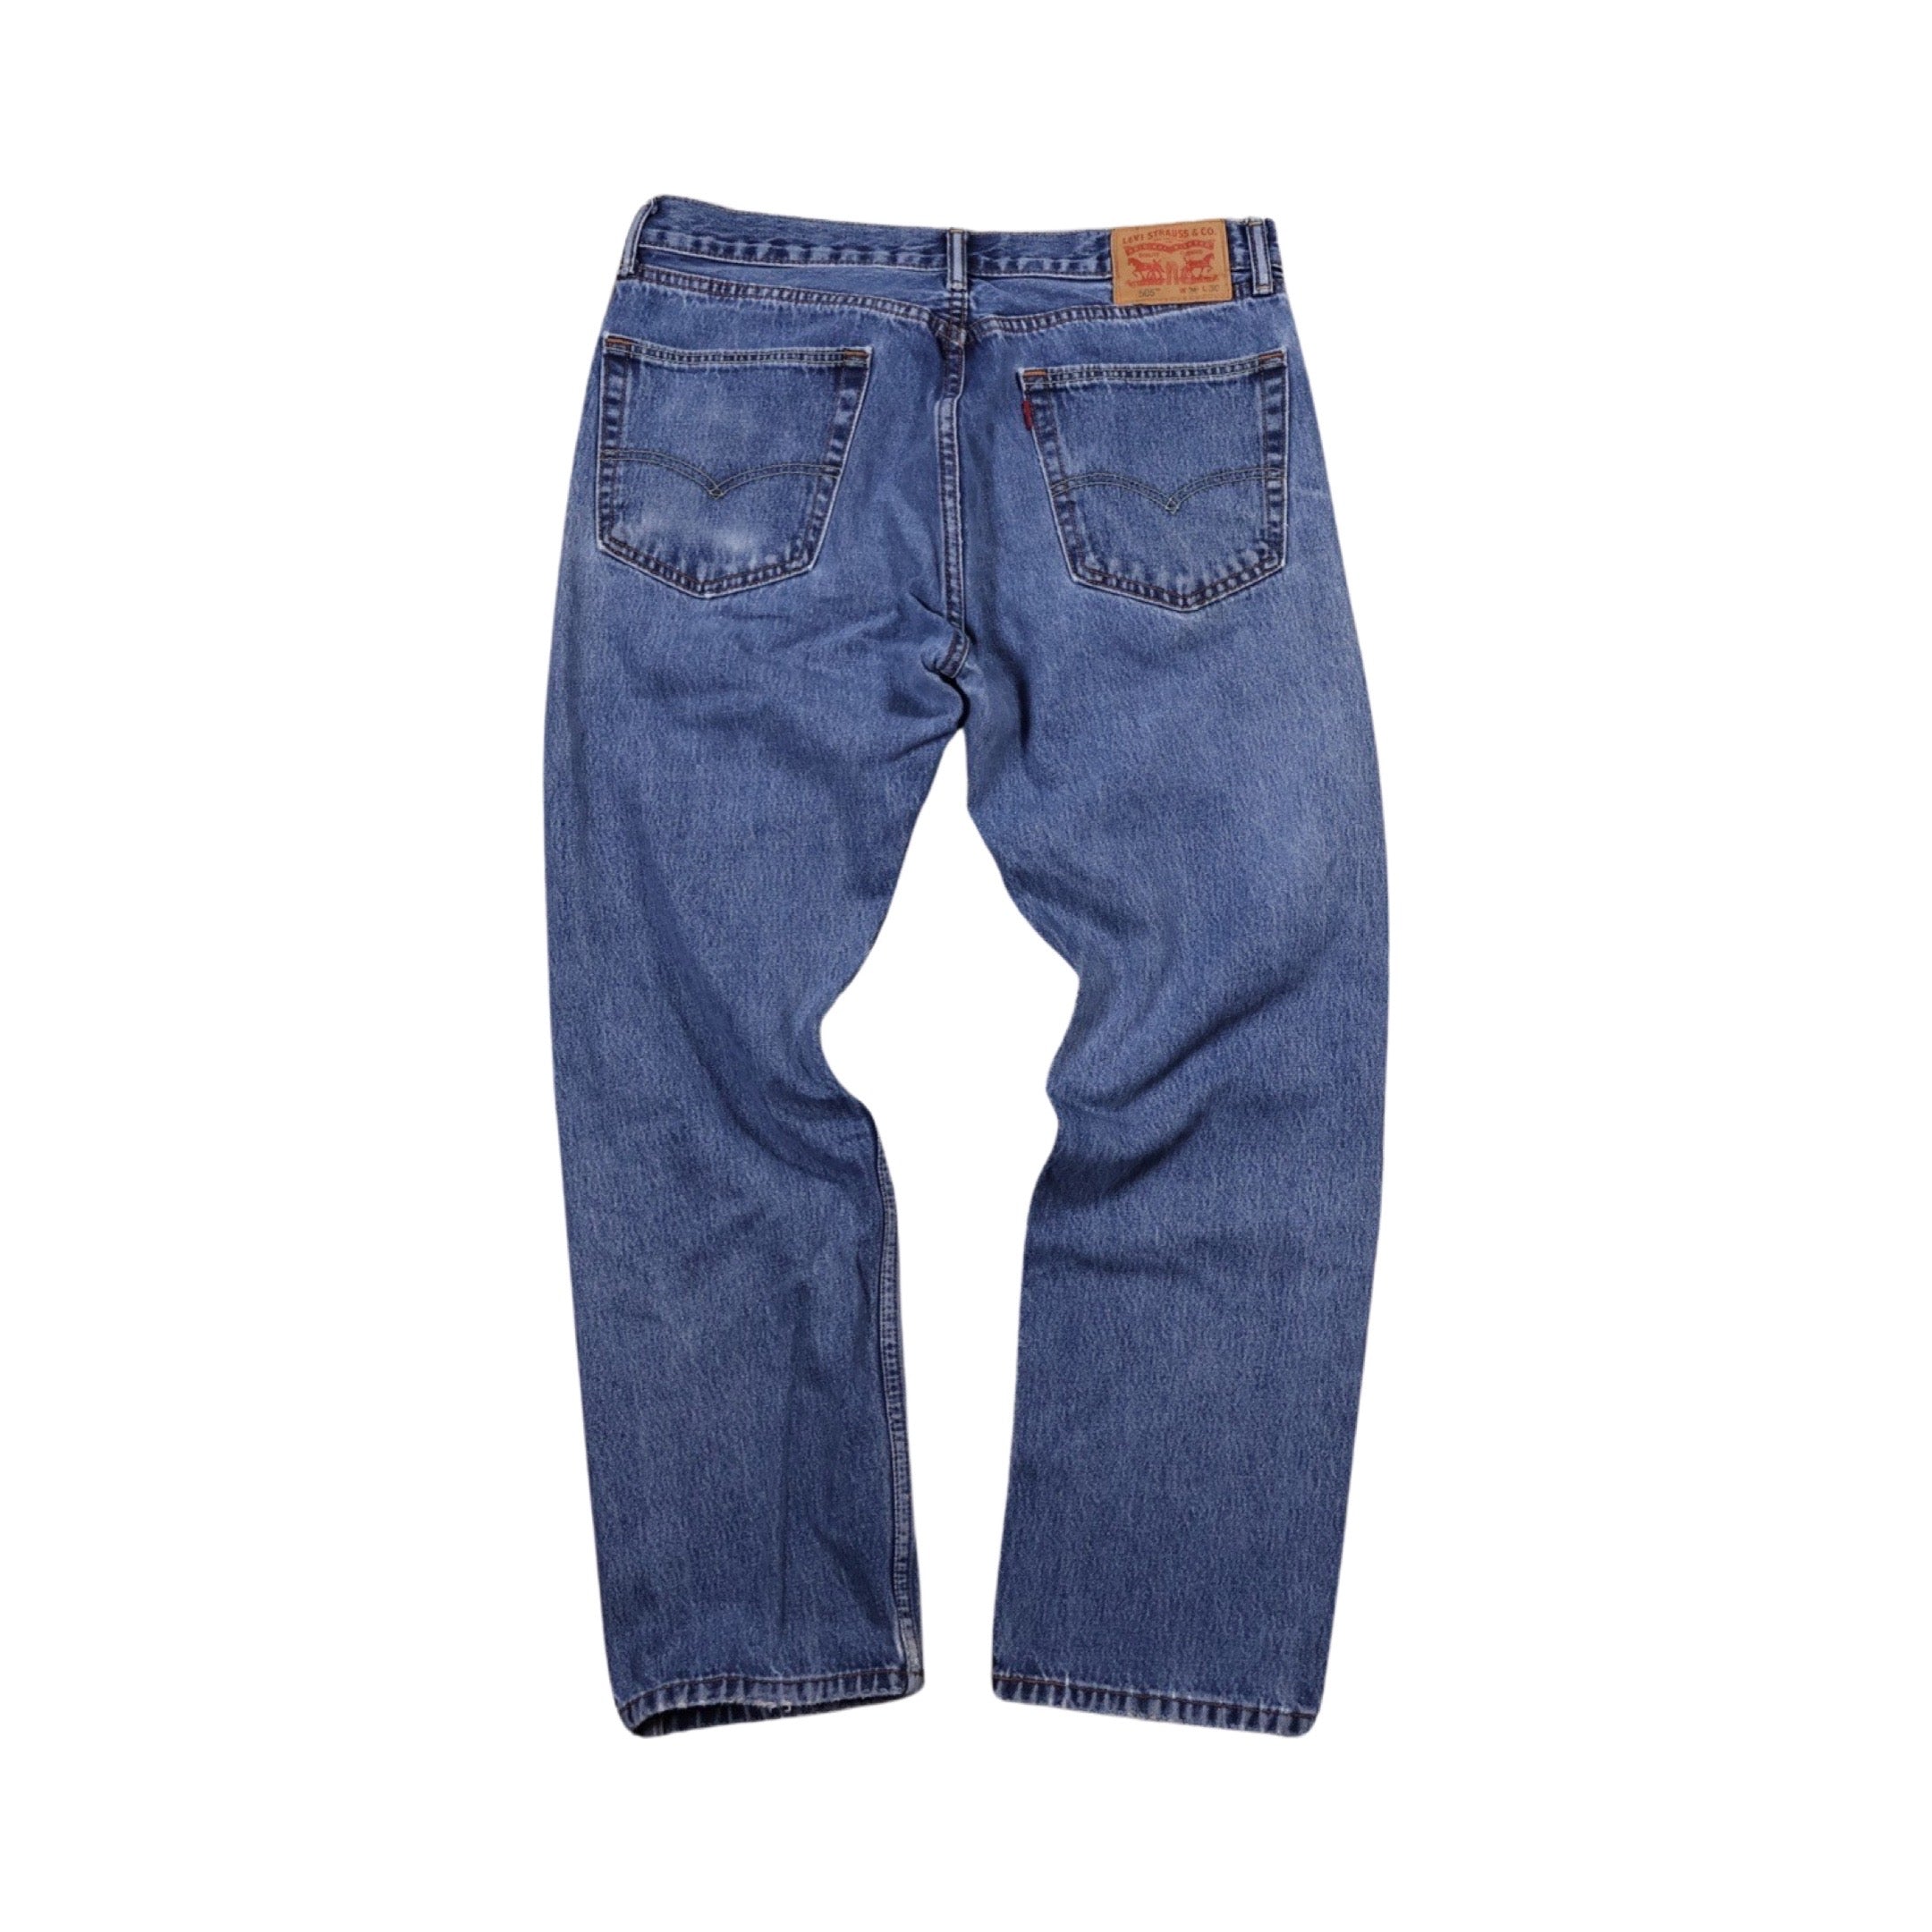 Levi’s 505 Jeans (35”)